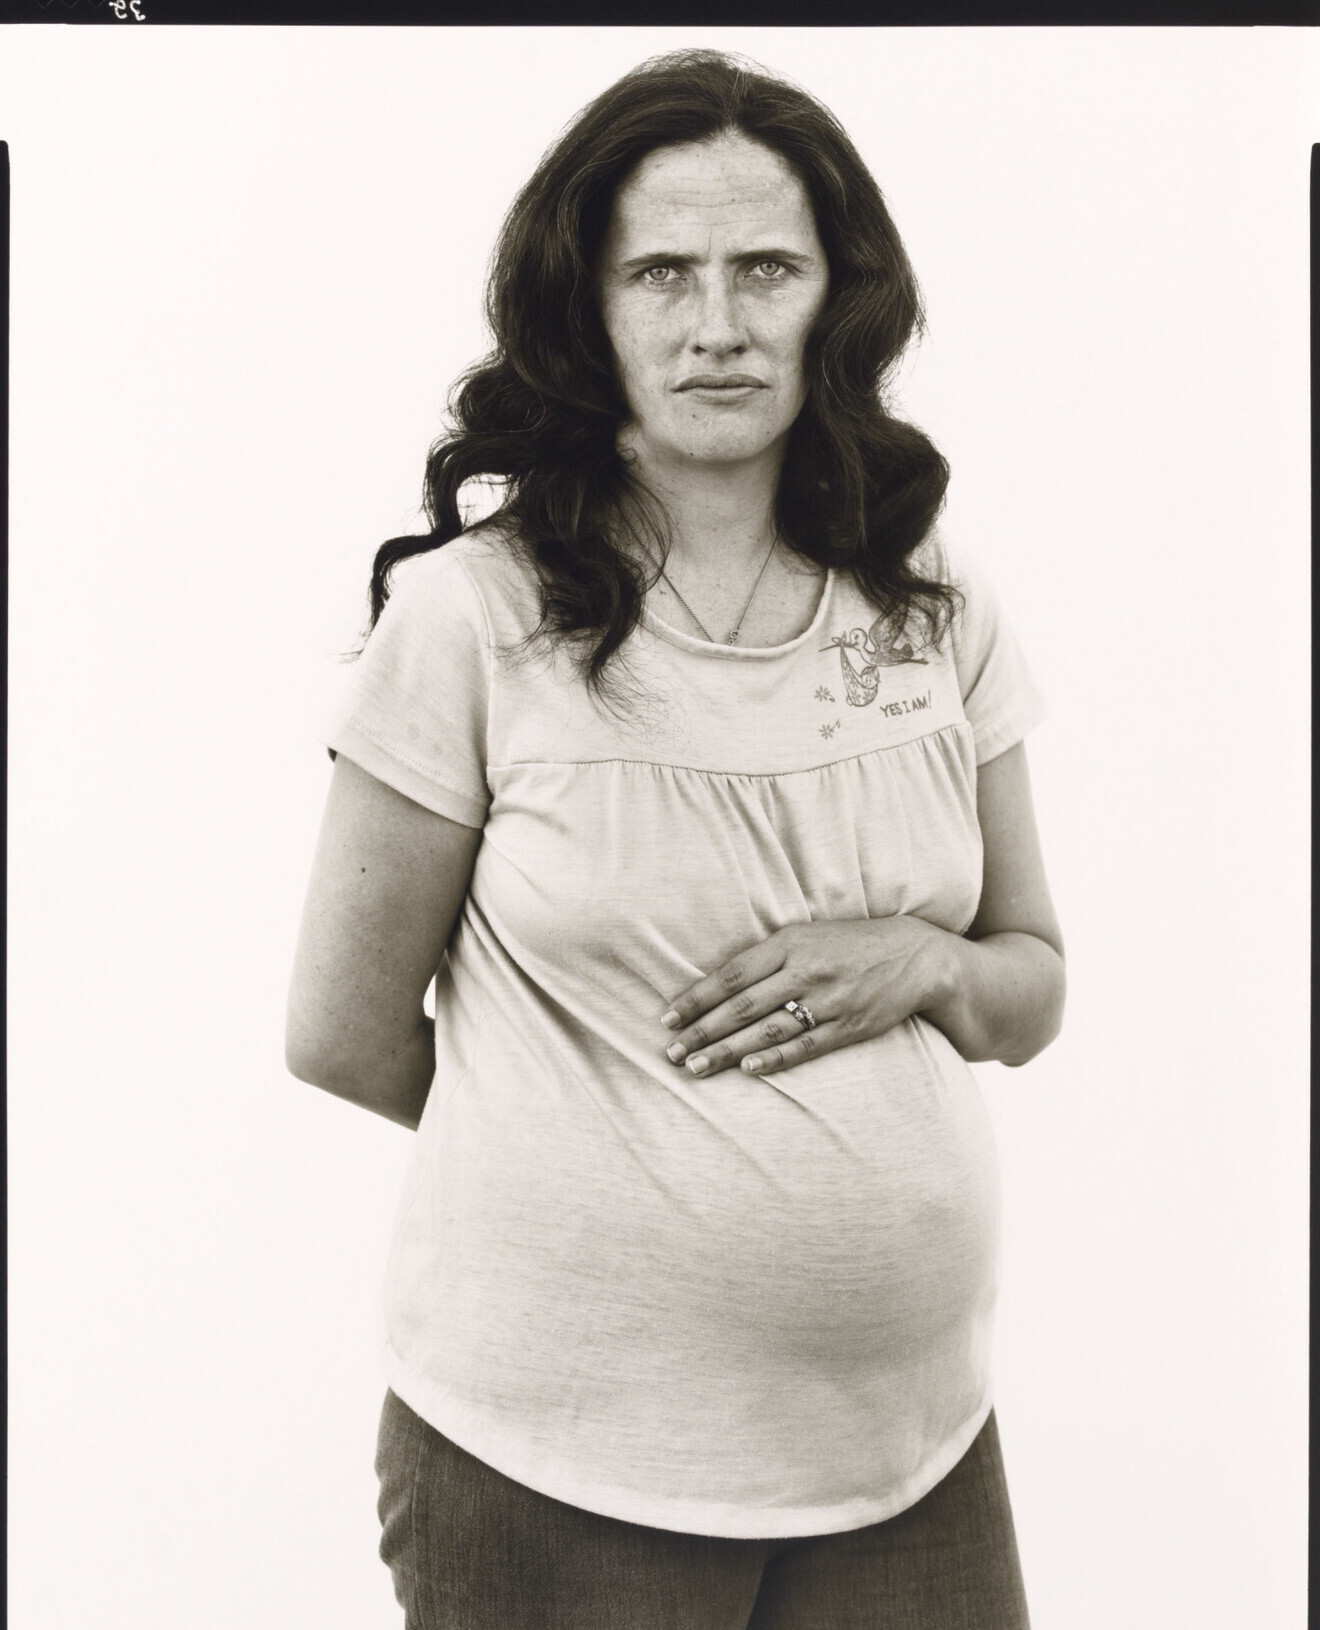 Эмма Ли Веллингтон, домохозяйка, Северный Лас-Вегас, Невада, 15 декабря 1980 г. Фотограф Ричард Аведон